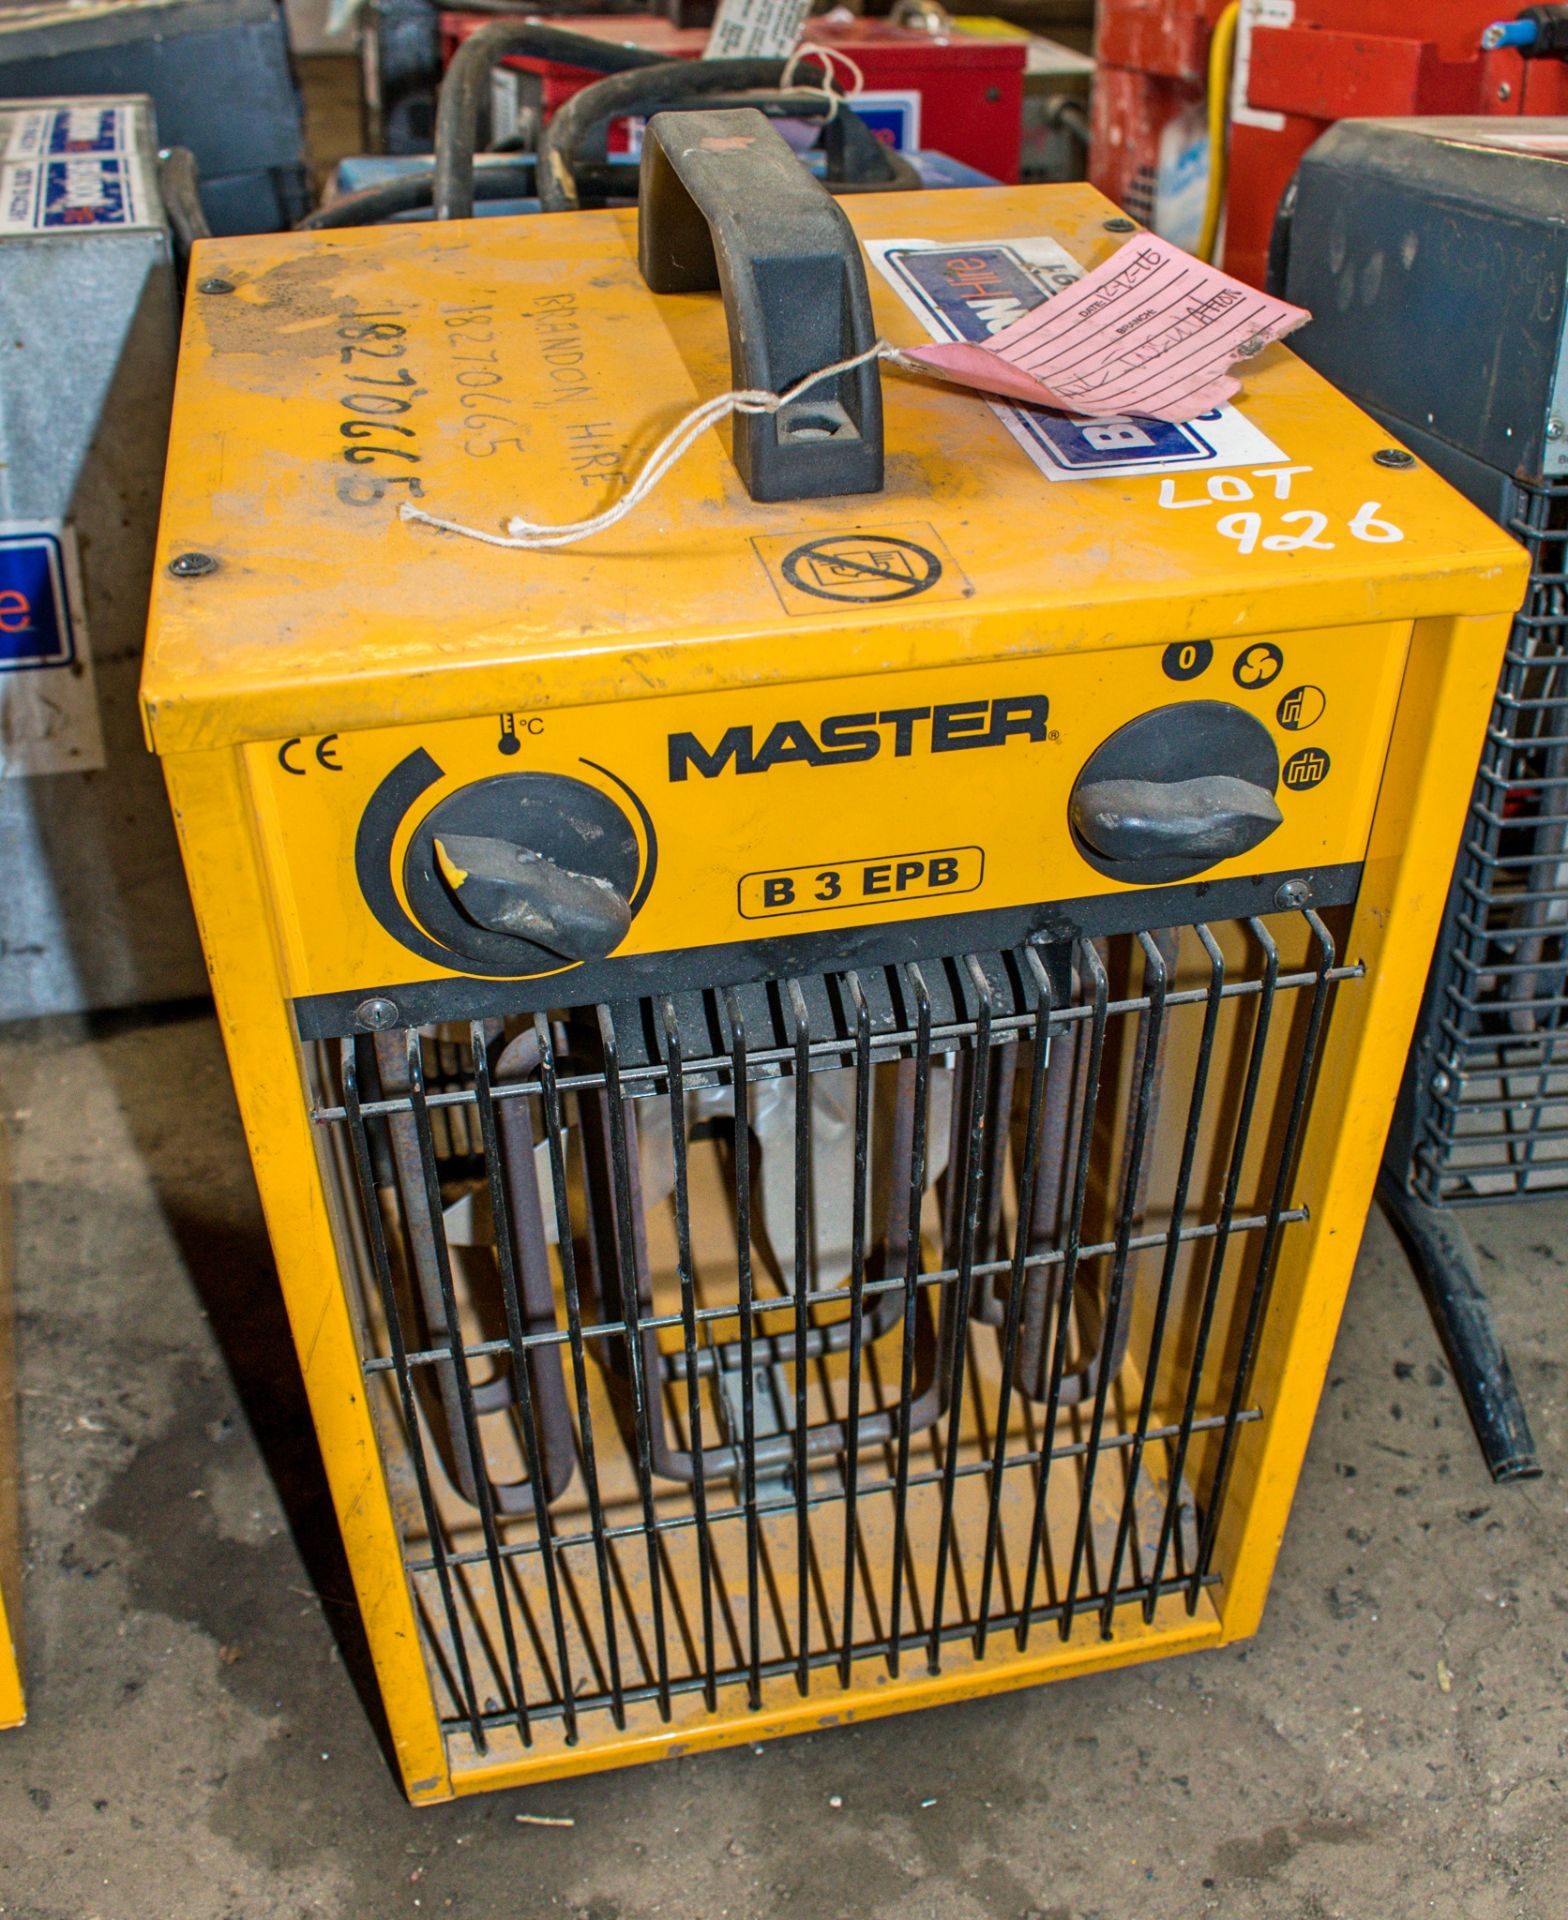 Master 240v fan heater ** Plug cut off **